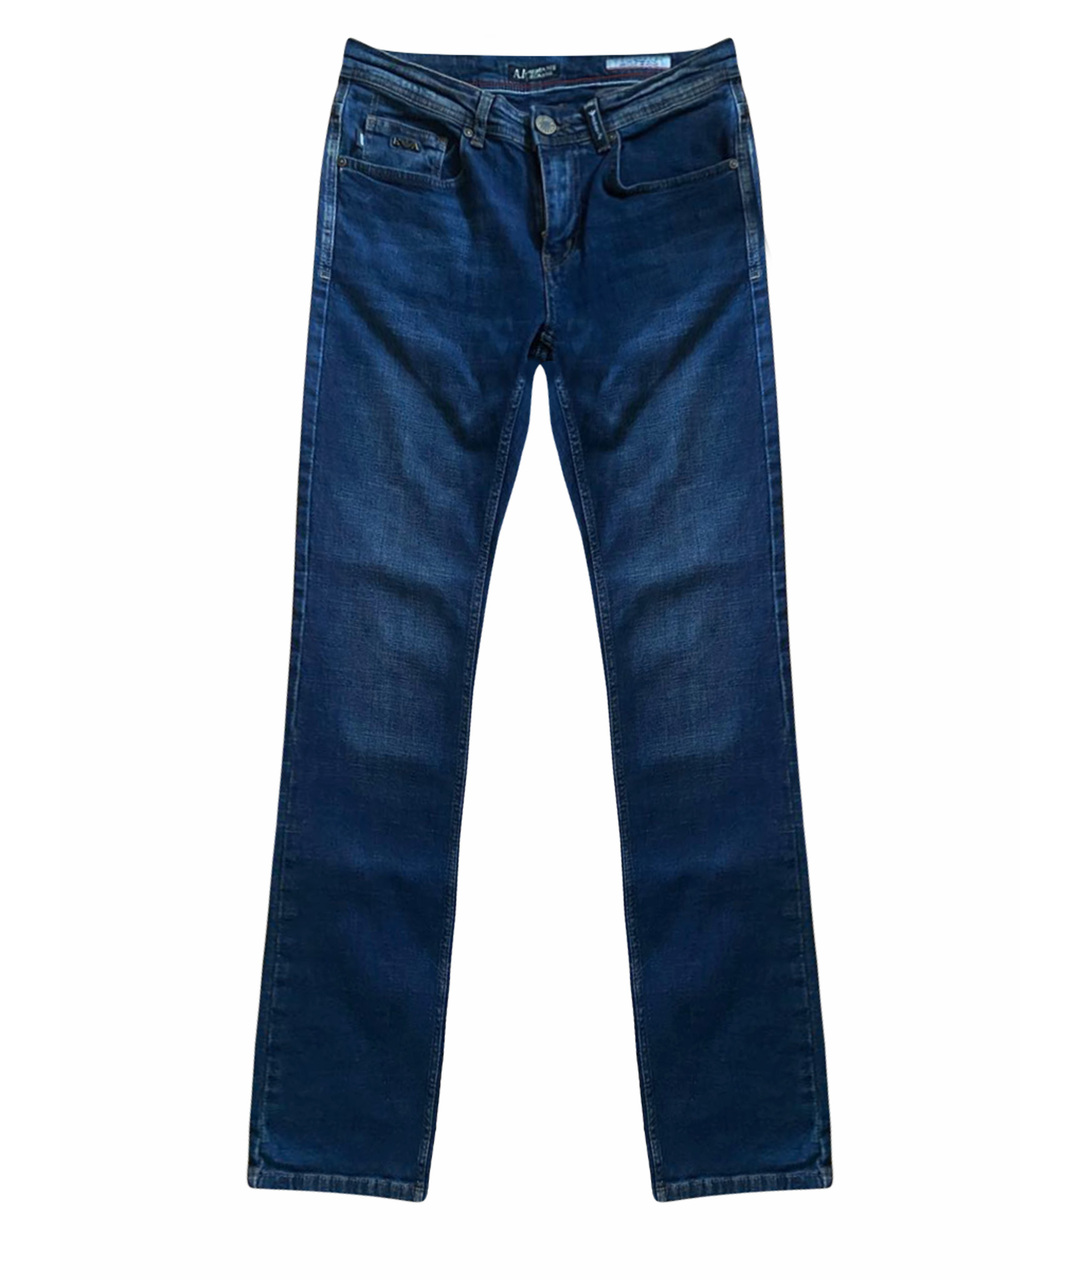 EMPORIO ARMANI Темно-синие хлопковые джинсы скинни, фото 1